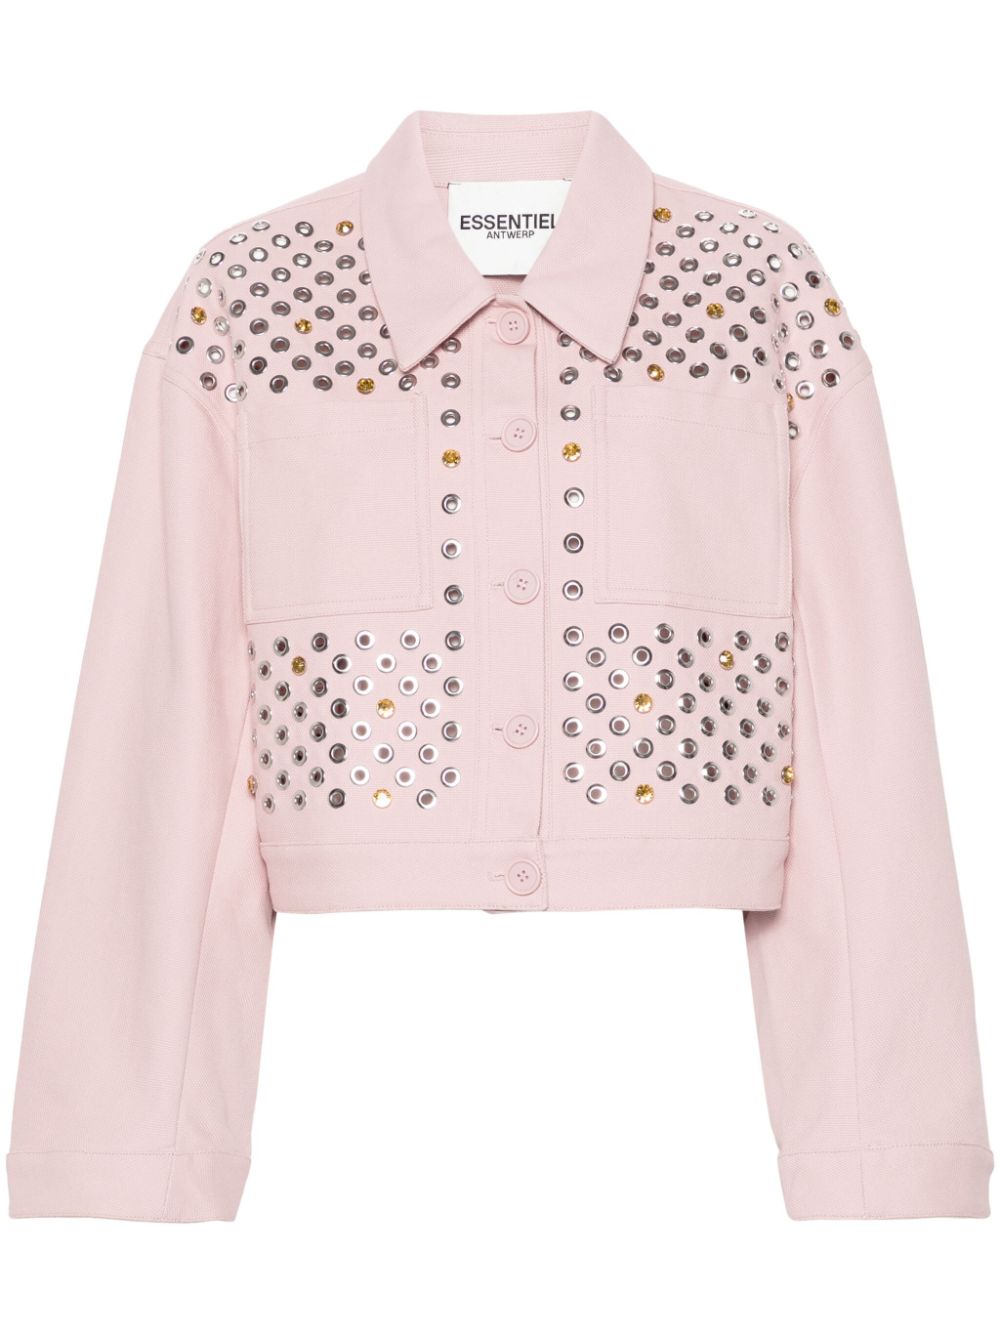 Essentiel Antwerp Firehouse shirt jacket - Pink von Essentiel Antwerp